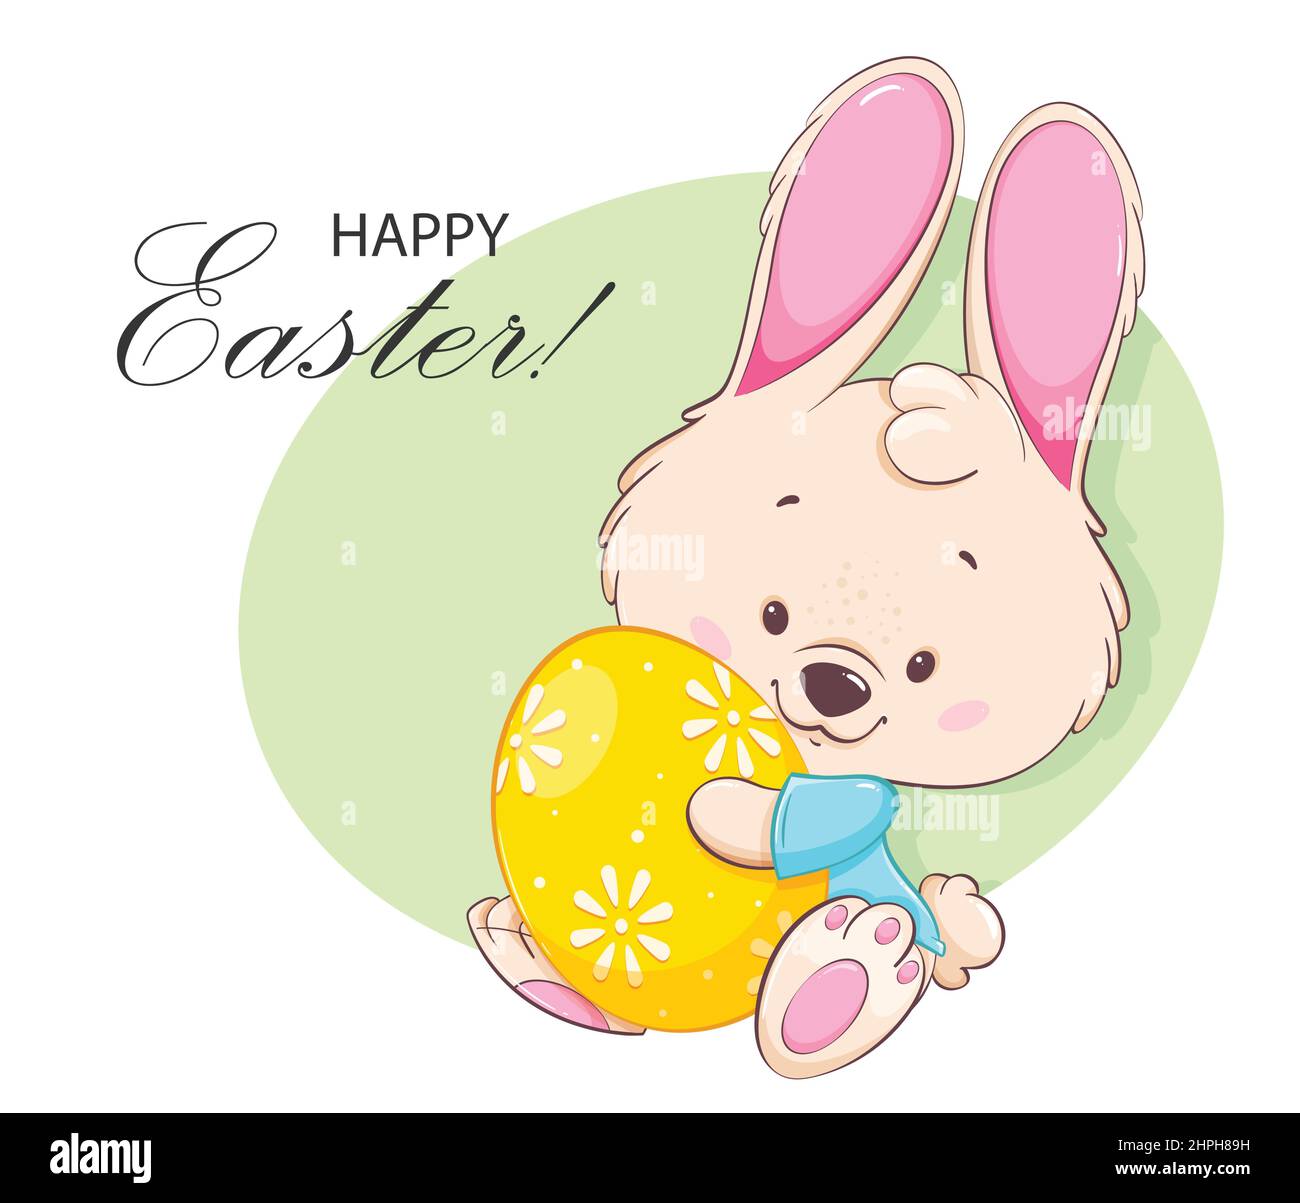 Frohe Ostern Grußkarte. Osterhase. Lustige Zeichentrickfigur Kaninchen hält gefärbte Ei. Vektorgrafik für Aktien Stock Vektor